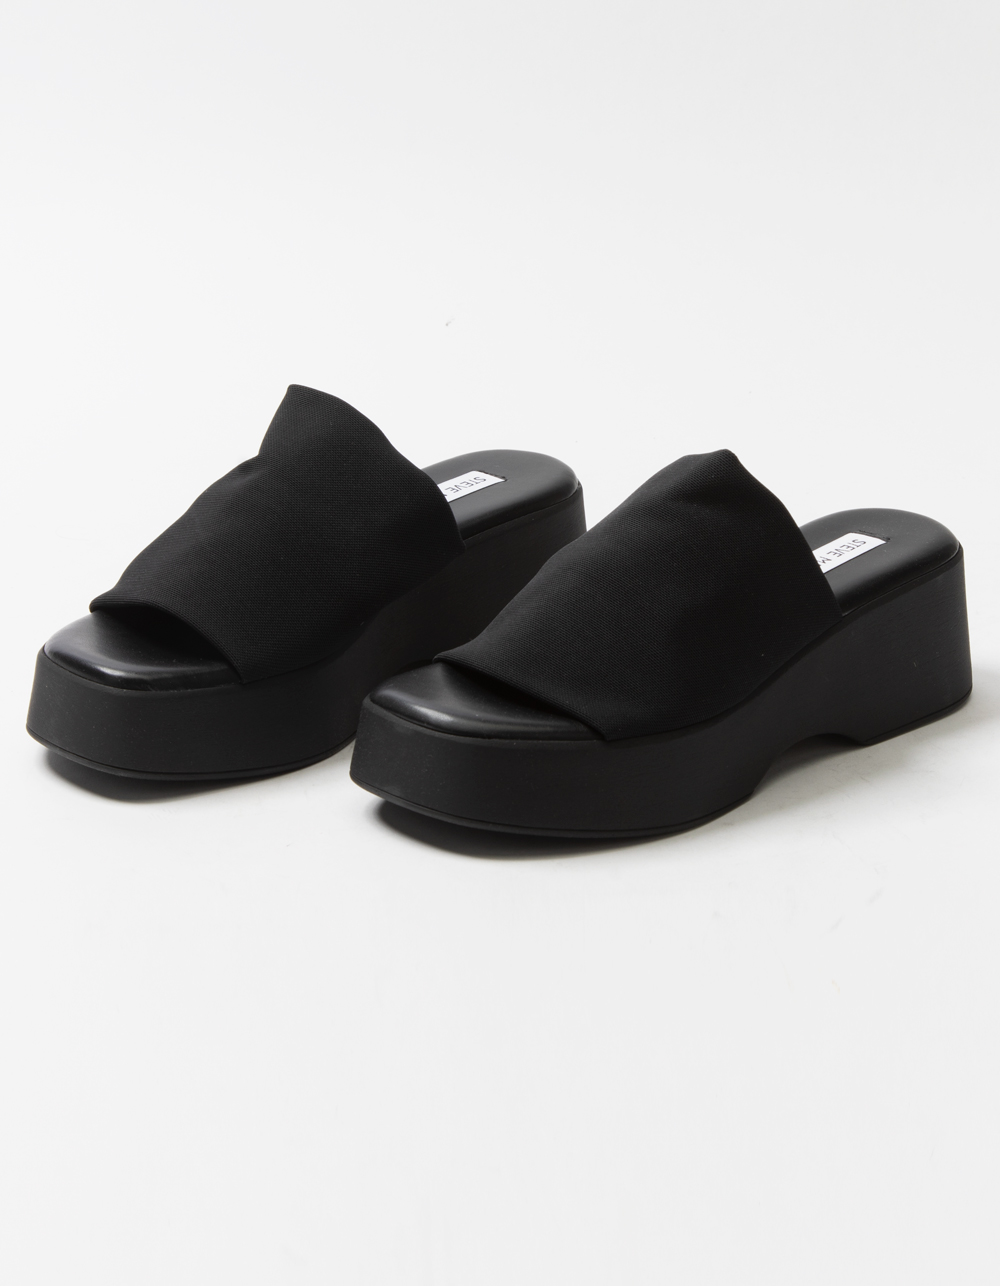 Women's platform slide sandal